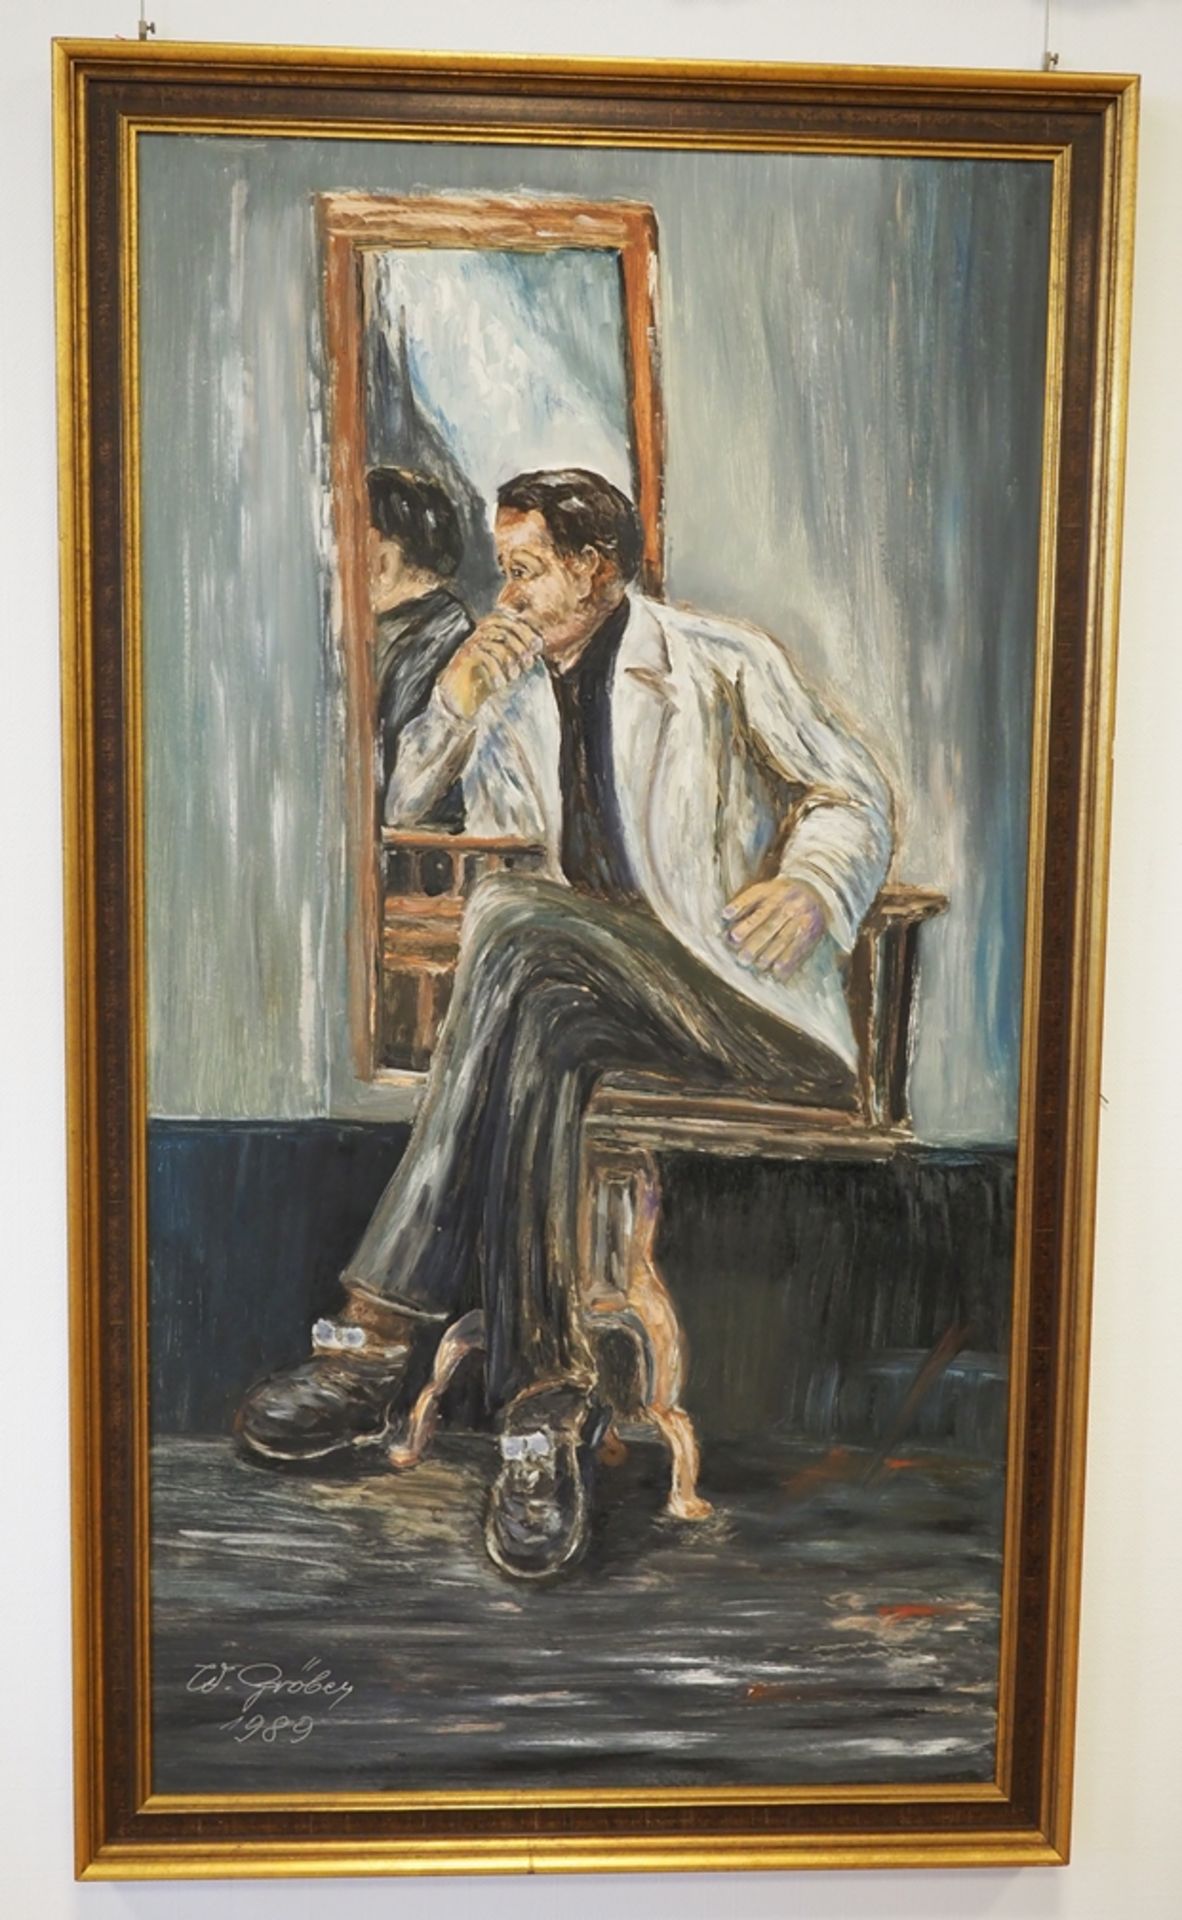 Ulmer Maler, Nachdenklicher Mann vor dem Spiegel, 1989.  - Bild 2 aus 4